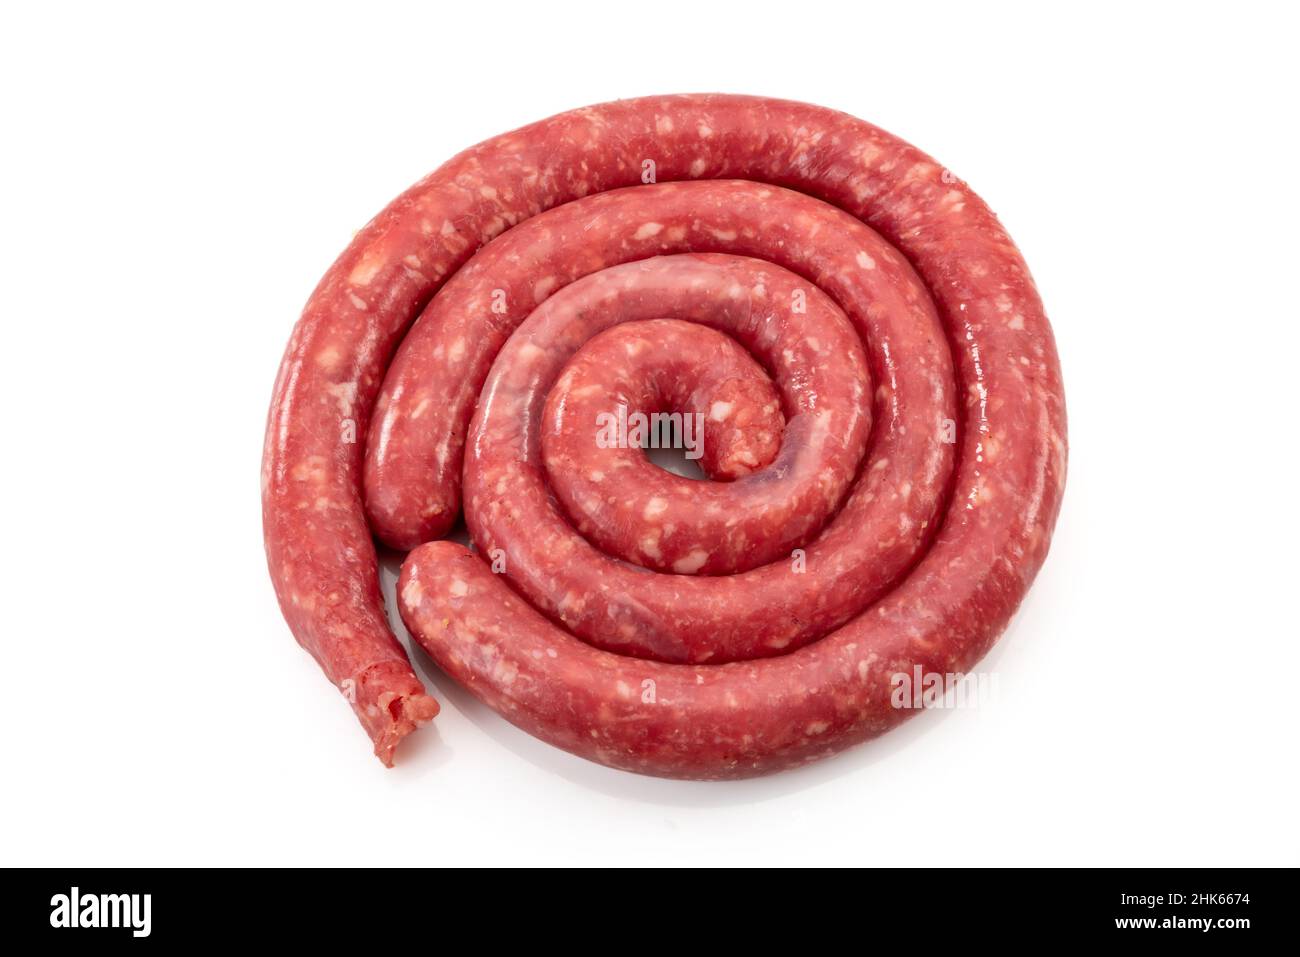 Saucisse de Bra, Piedmont, Italie : saucisse faite avec du bœuf maigre et du ventre de porc.Il est mangé cru ou grillé Banque D'Images